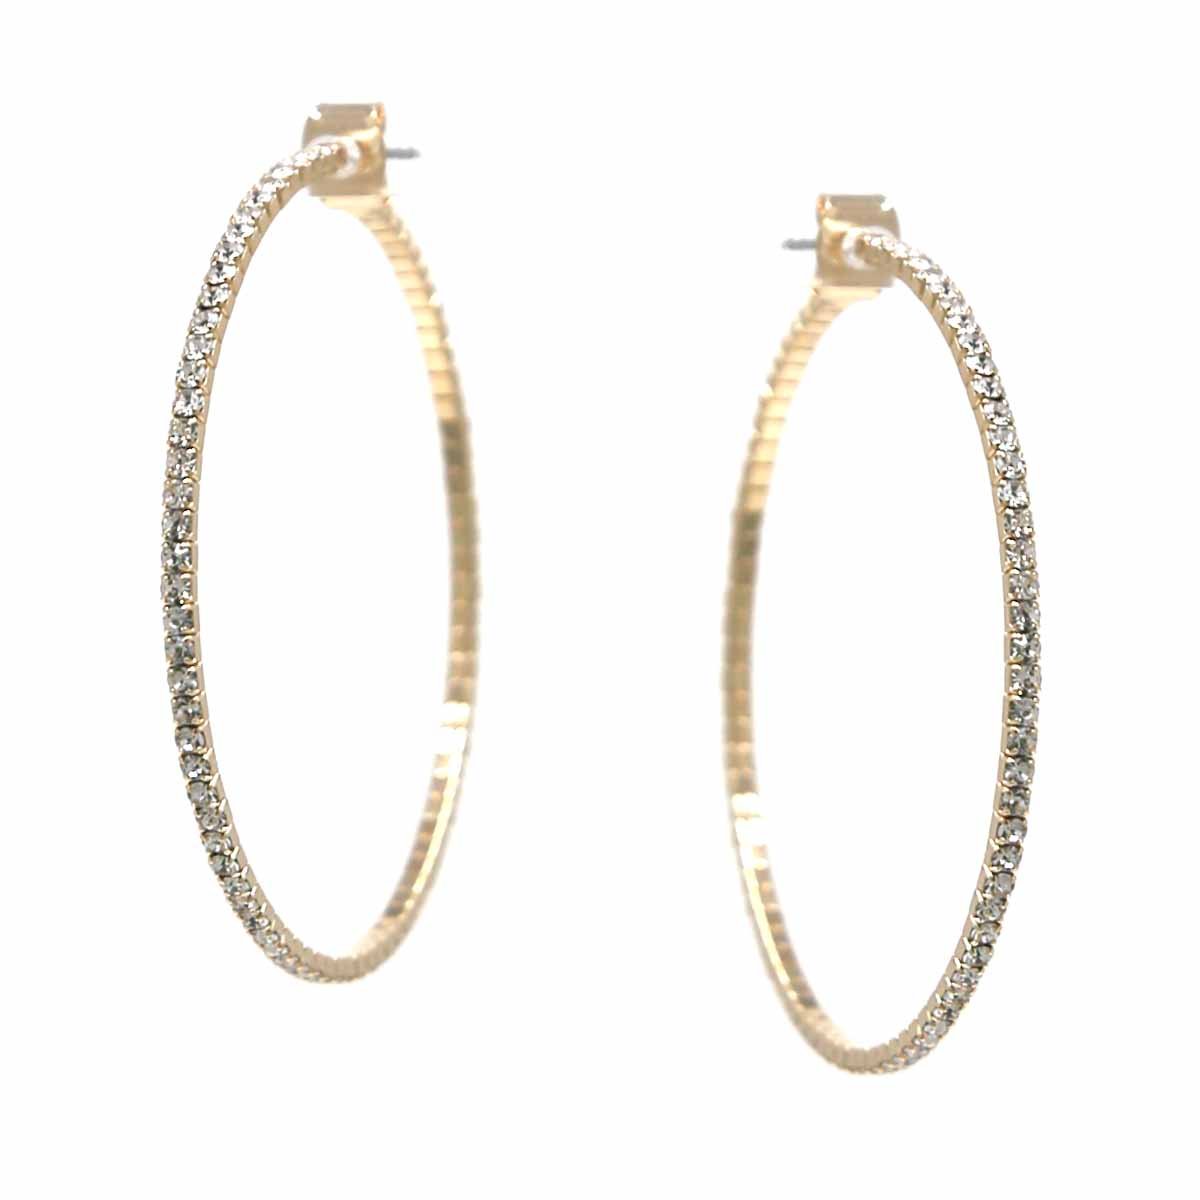 Rhinestone Skinny Hoop Earrings Gold